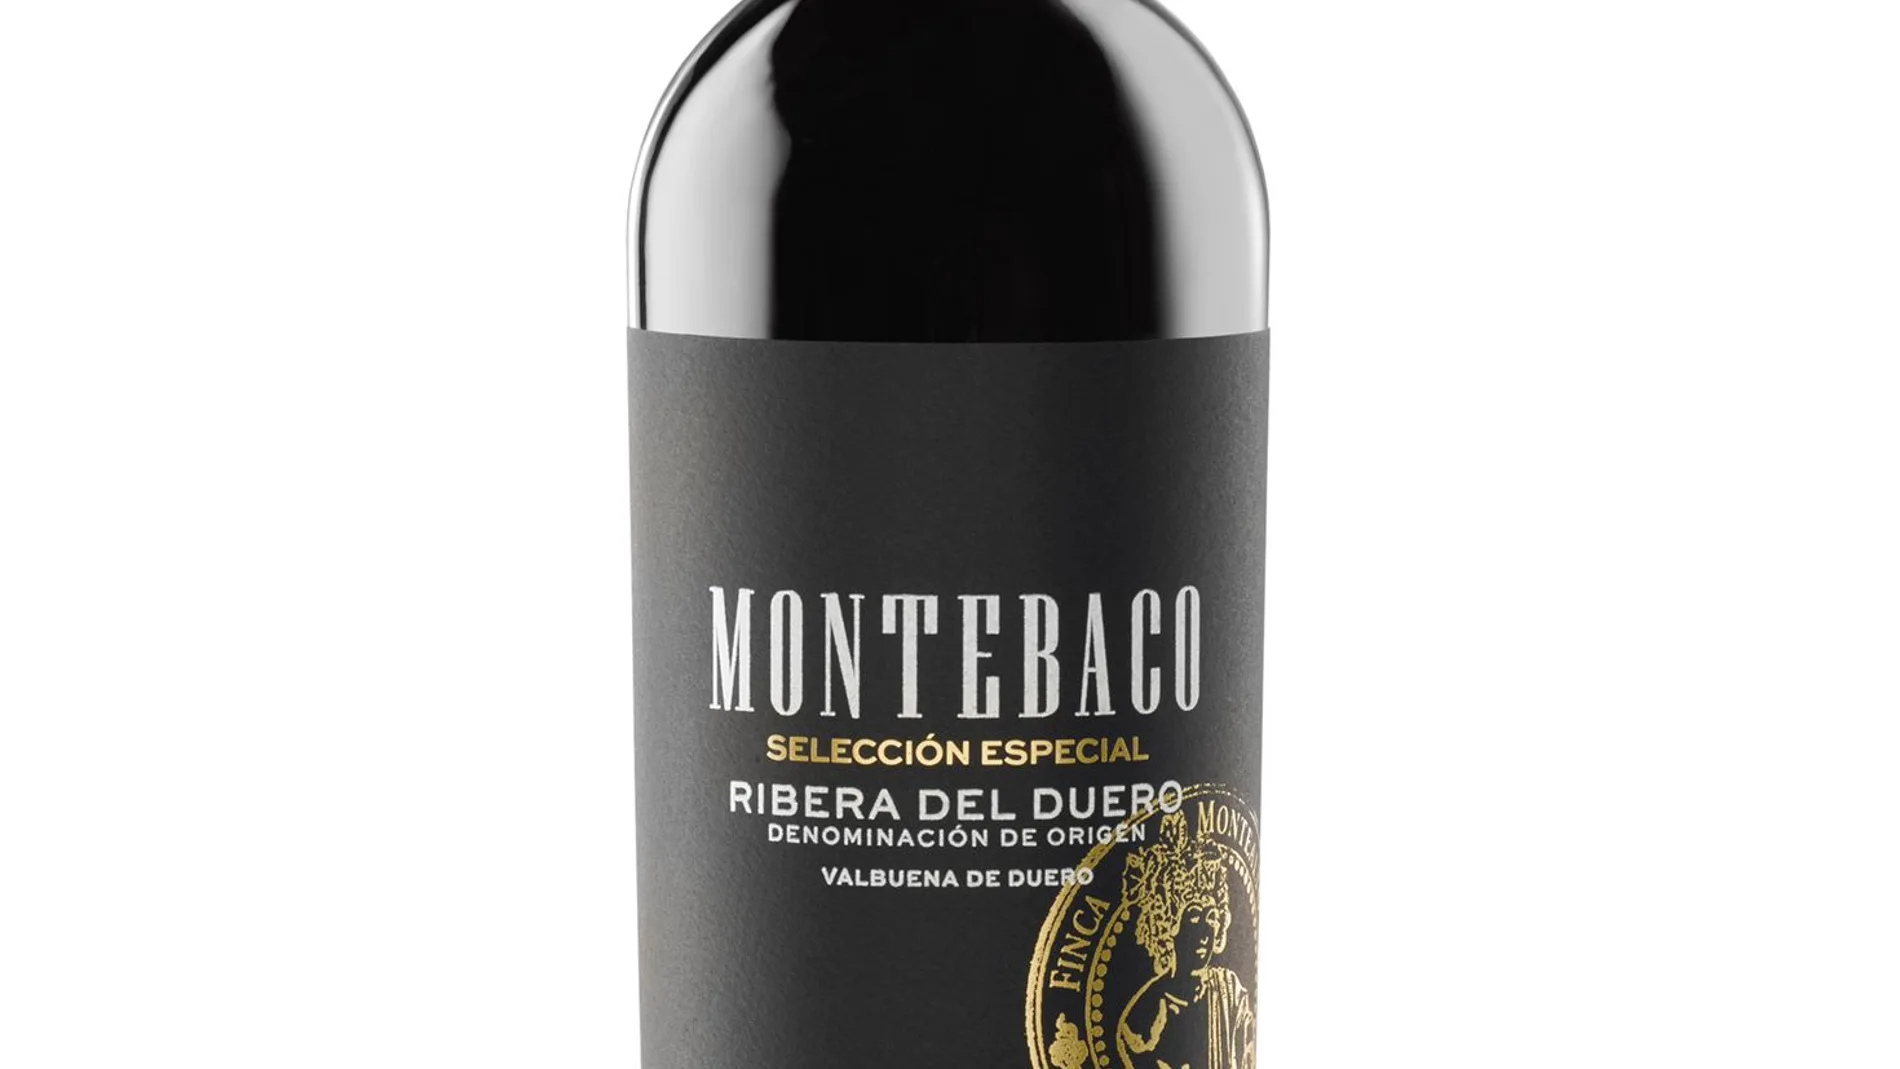 Vino Montebaco Selección Especial 2016